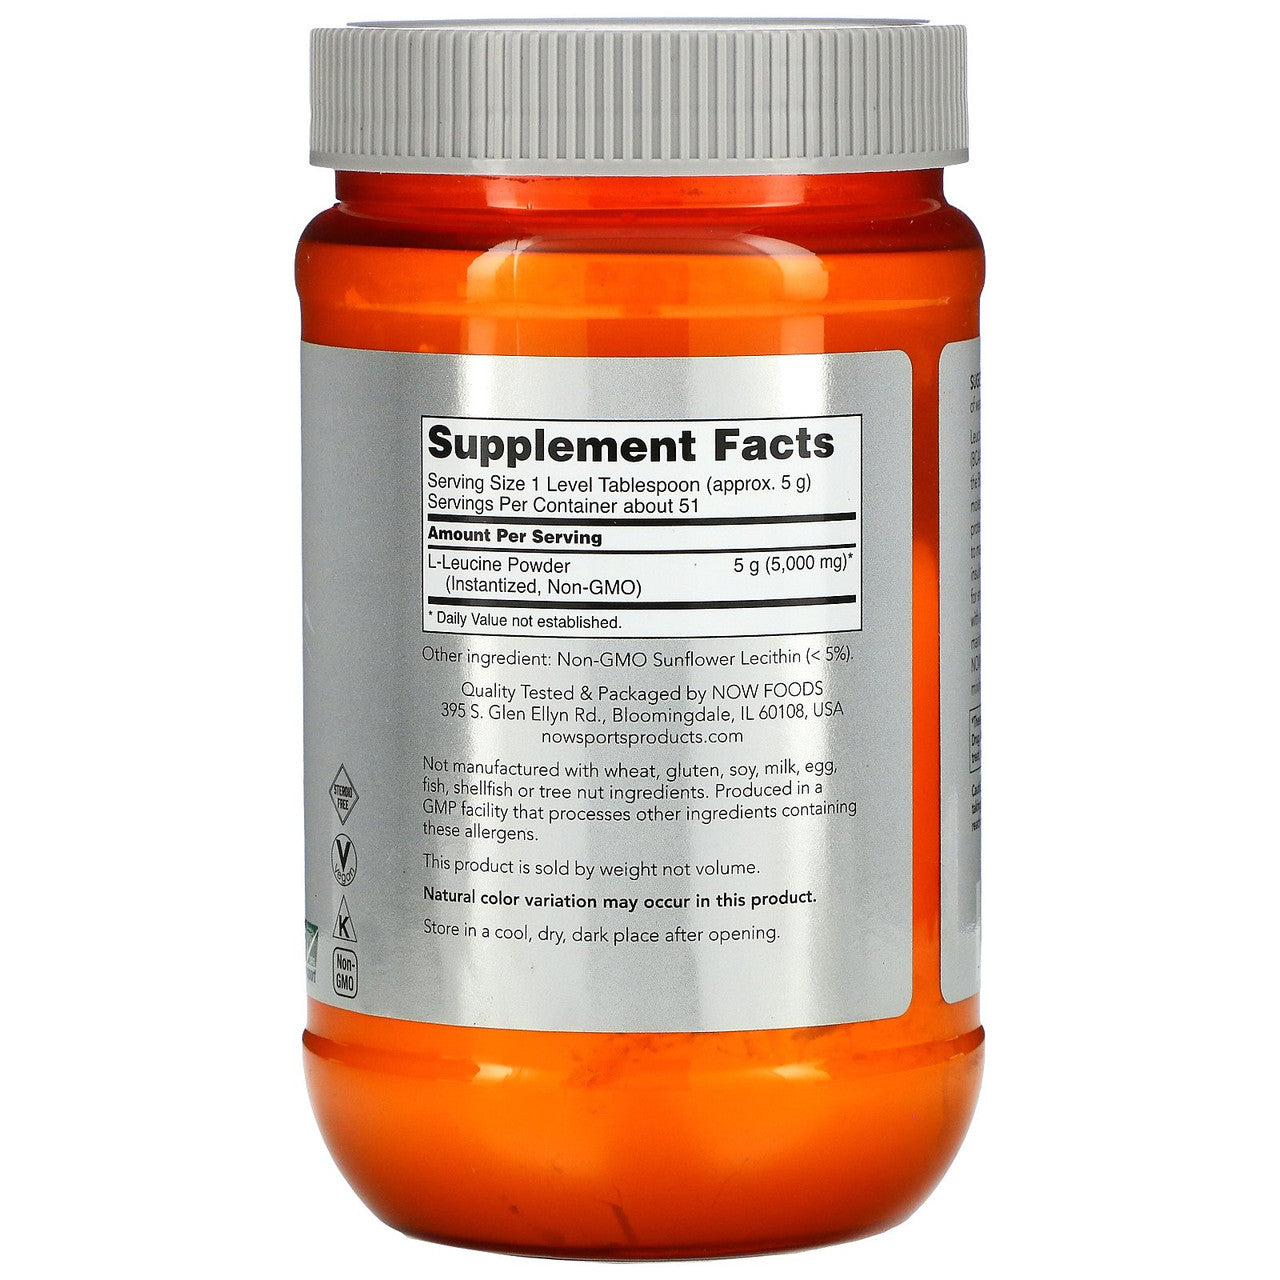 Now L-Leucine Powder Supplement Facts Label